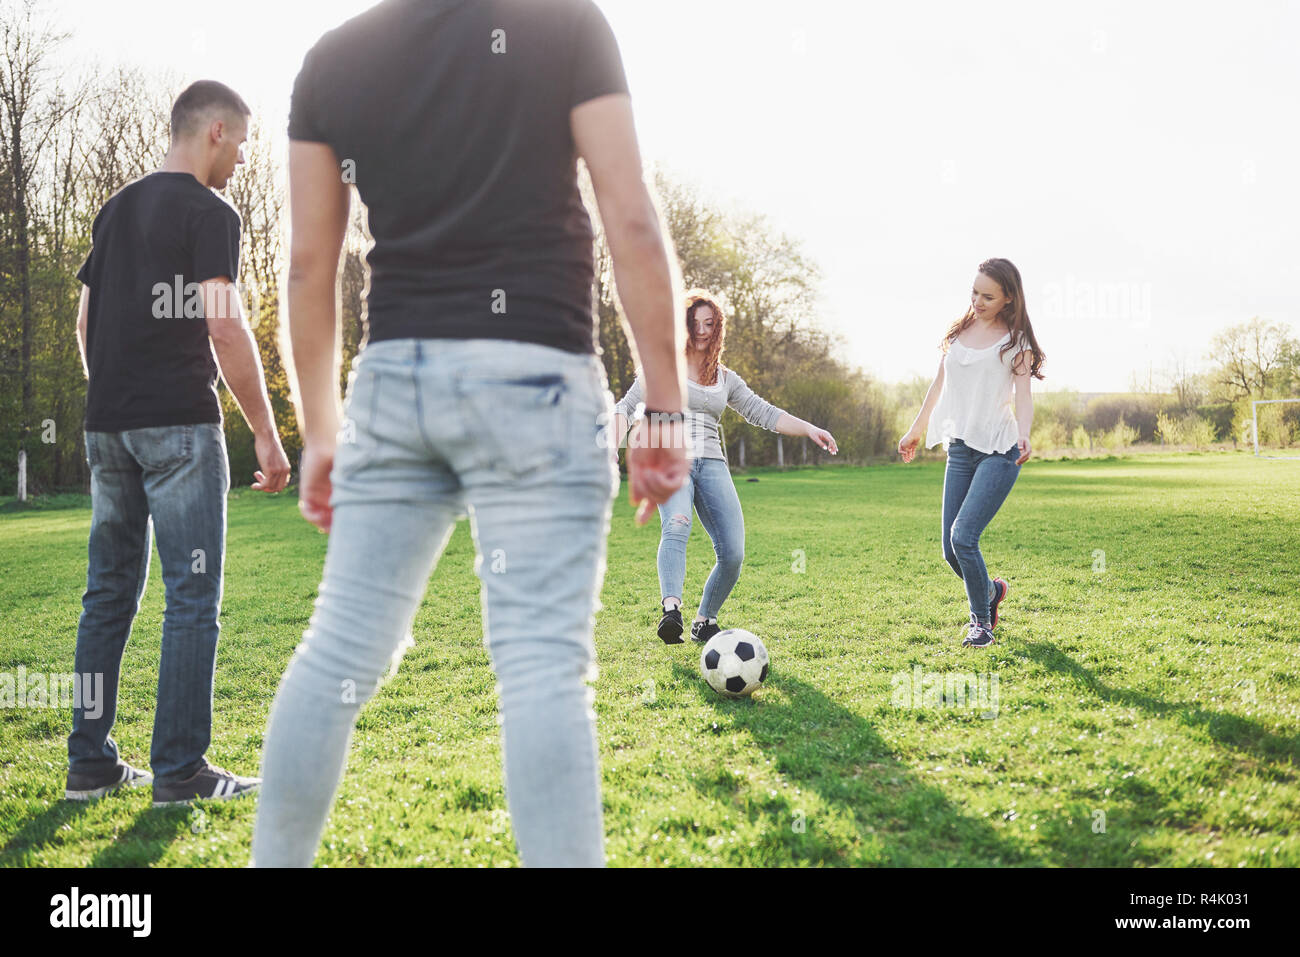 Eine Gruppe von Freunden im casual Outfit Fußball spielen im Freien. Leute  haben Spaß und Spaß haben. Aktive Erholung und einen malerischen  Sonnenuntergang Stockfotografie - Alamy